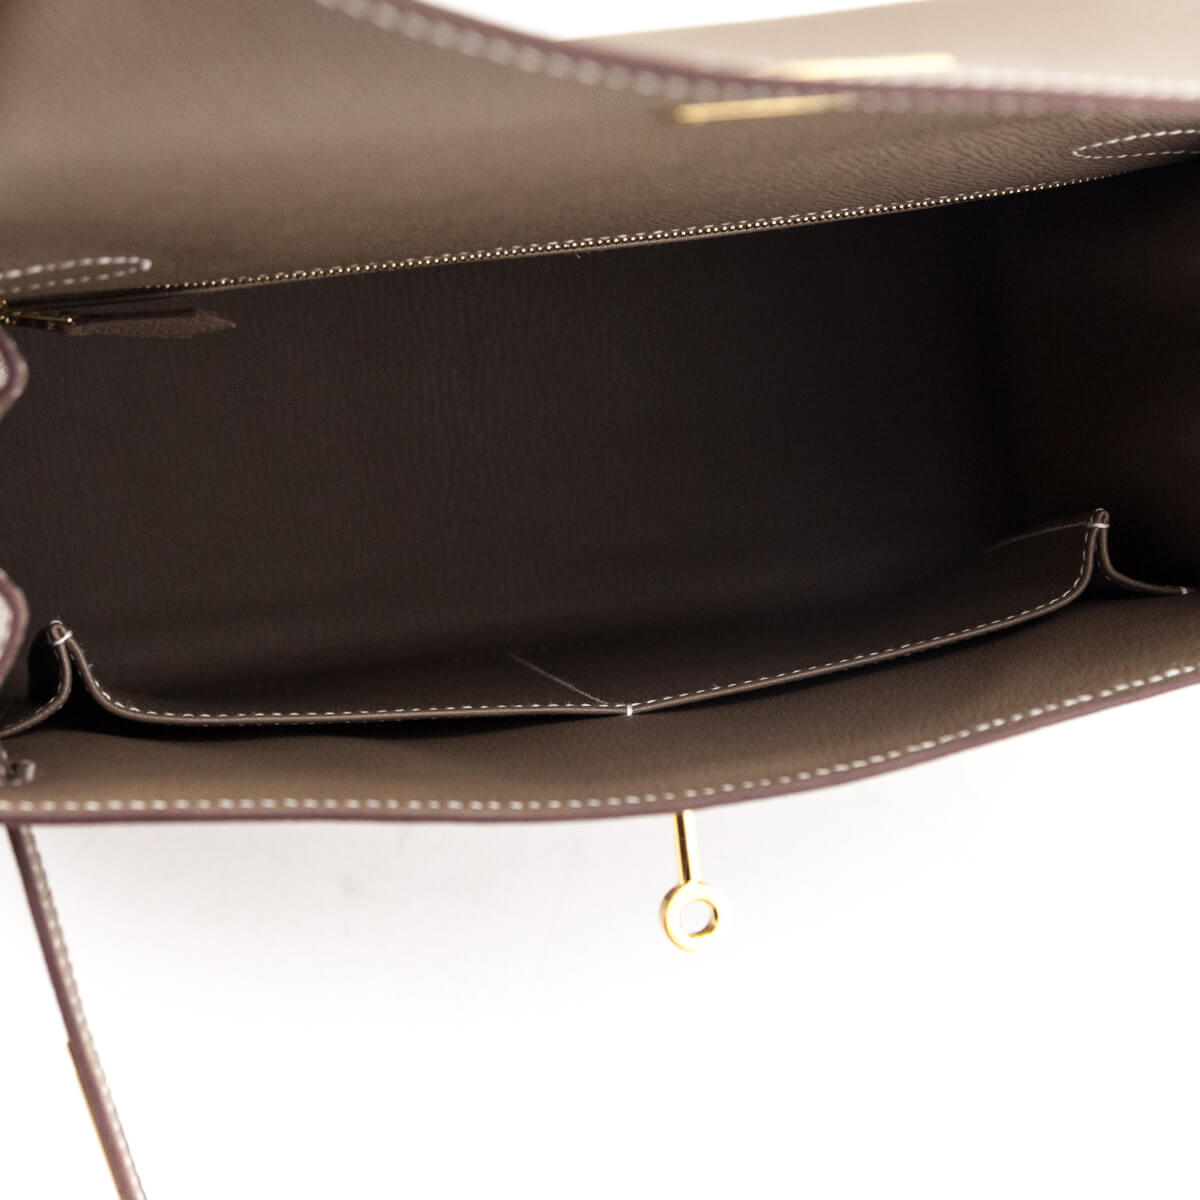 Hermes Etoupe Epsom Sellier Kelly 28 - Shop Pristine Hermes Handbags